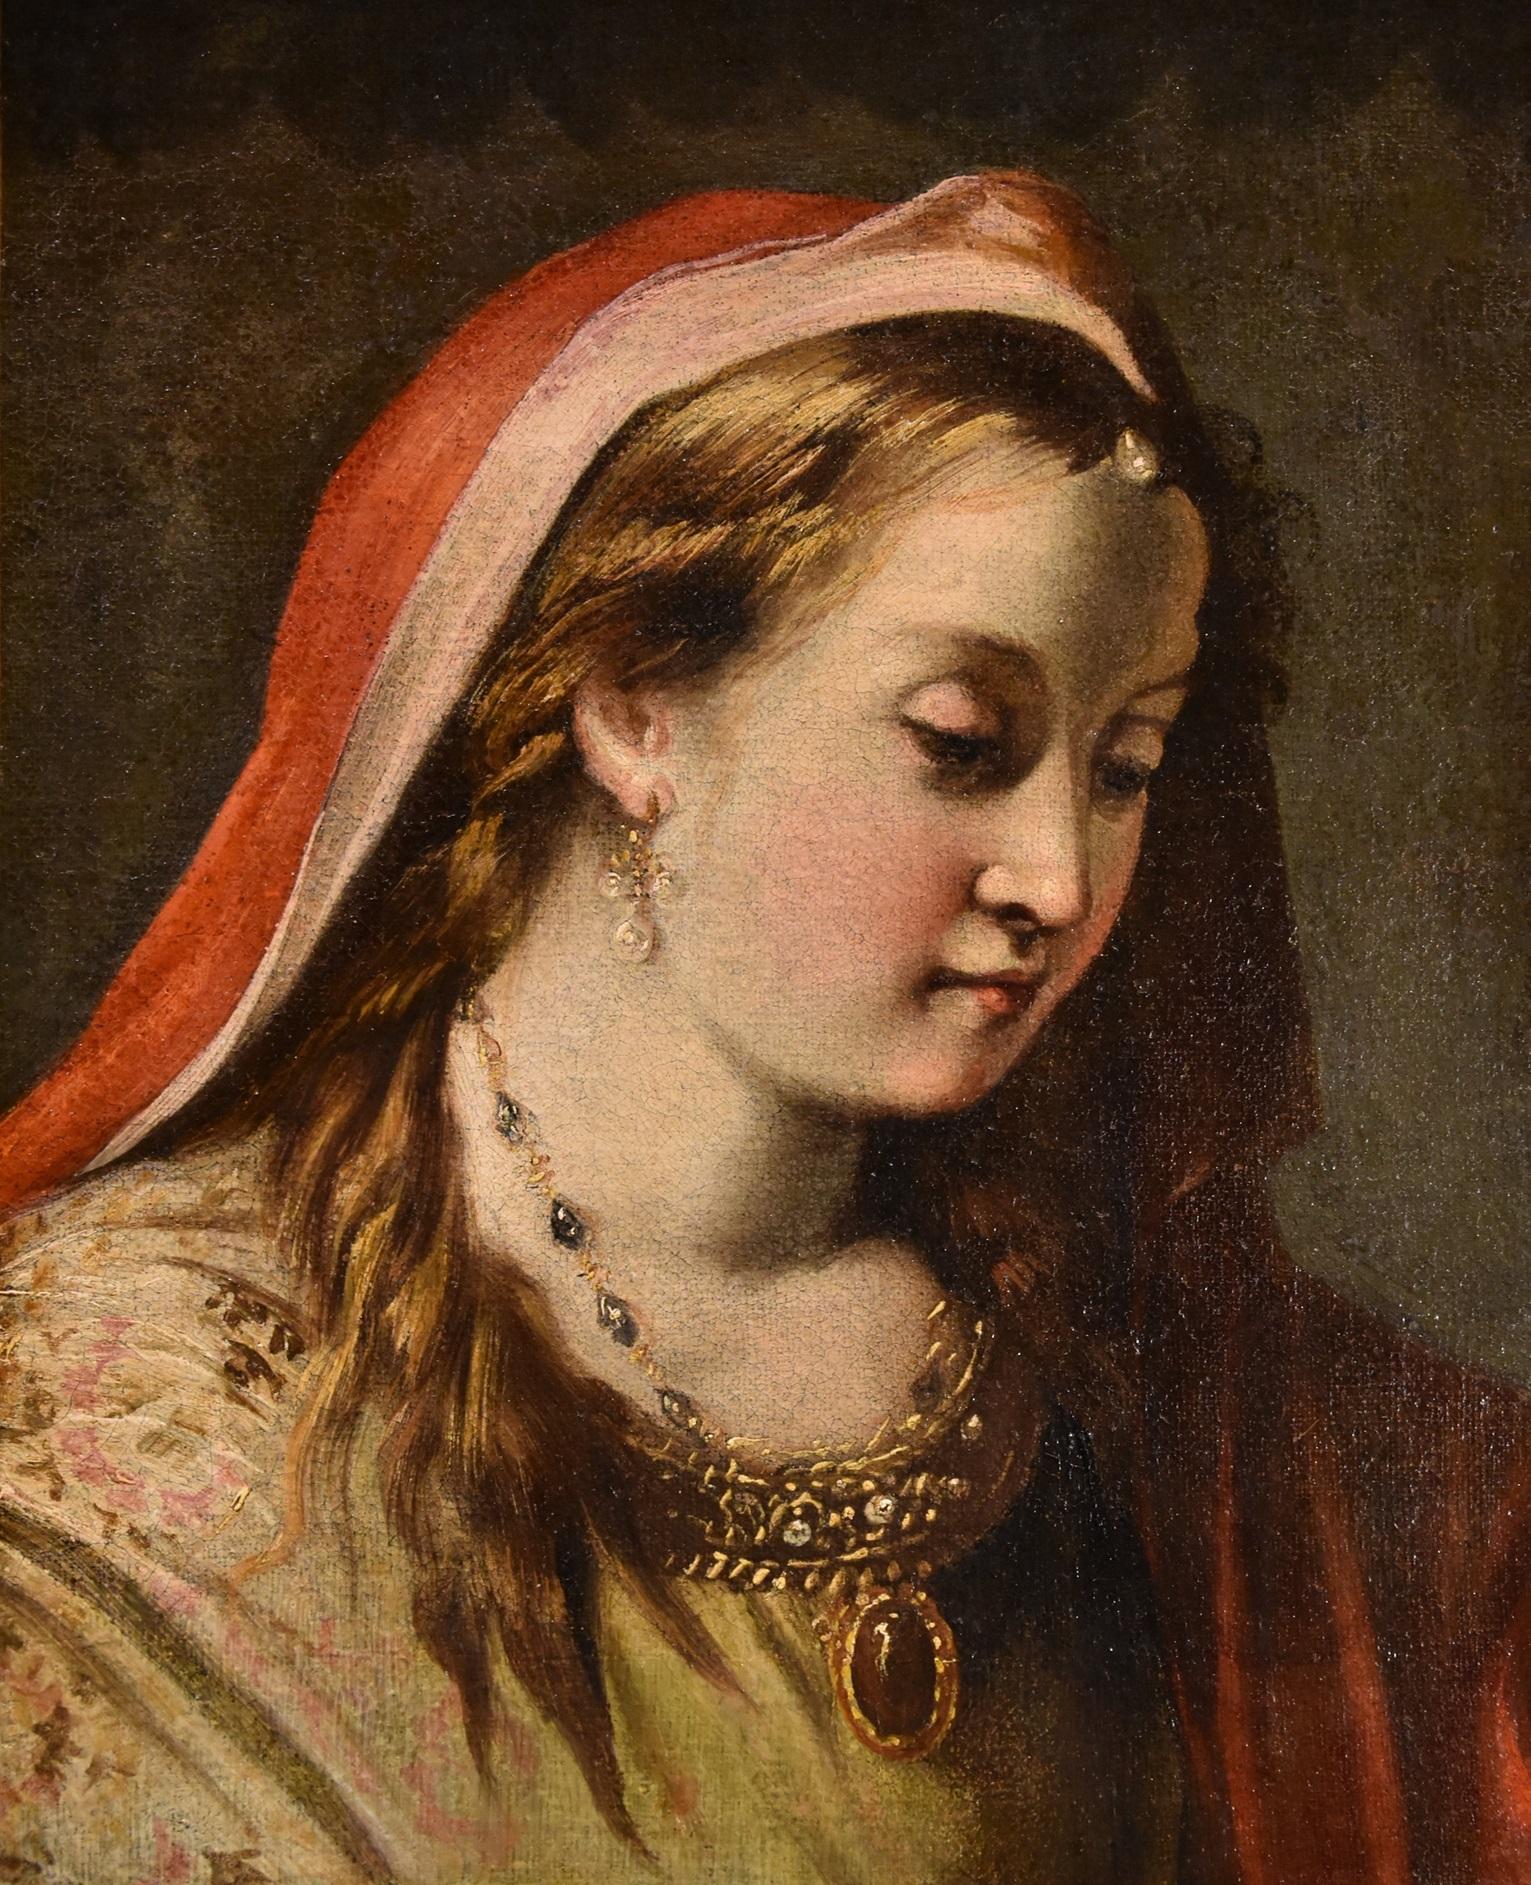 Gaspare Diziani (belluno 1689 - Venice 1767) Portrait Painting - Portrait Woman Princess Diziani Paint 18th Century Oil on canvas Old master Art